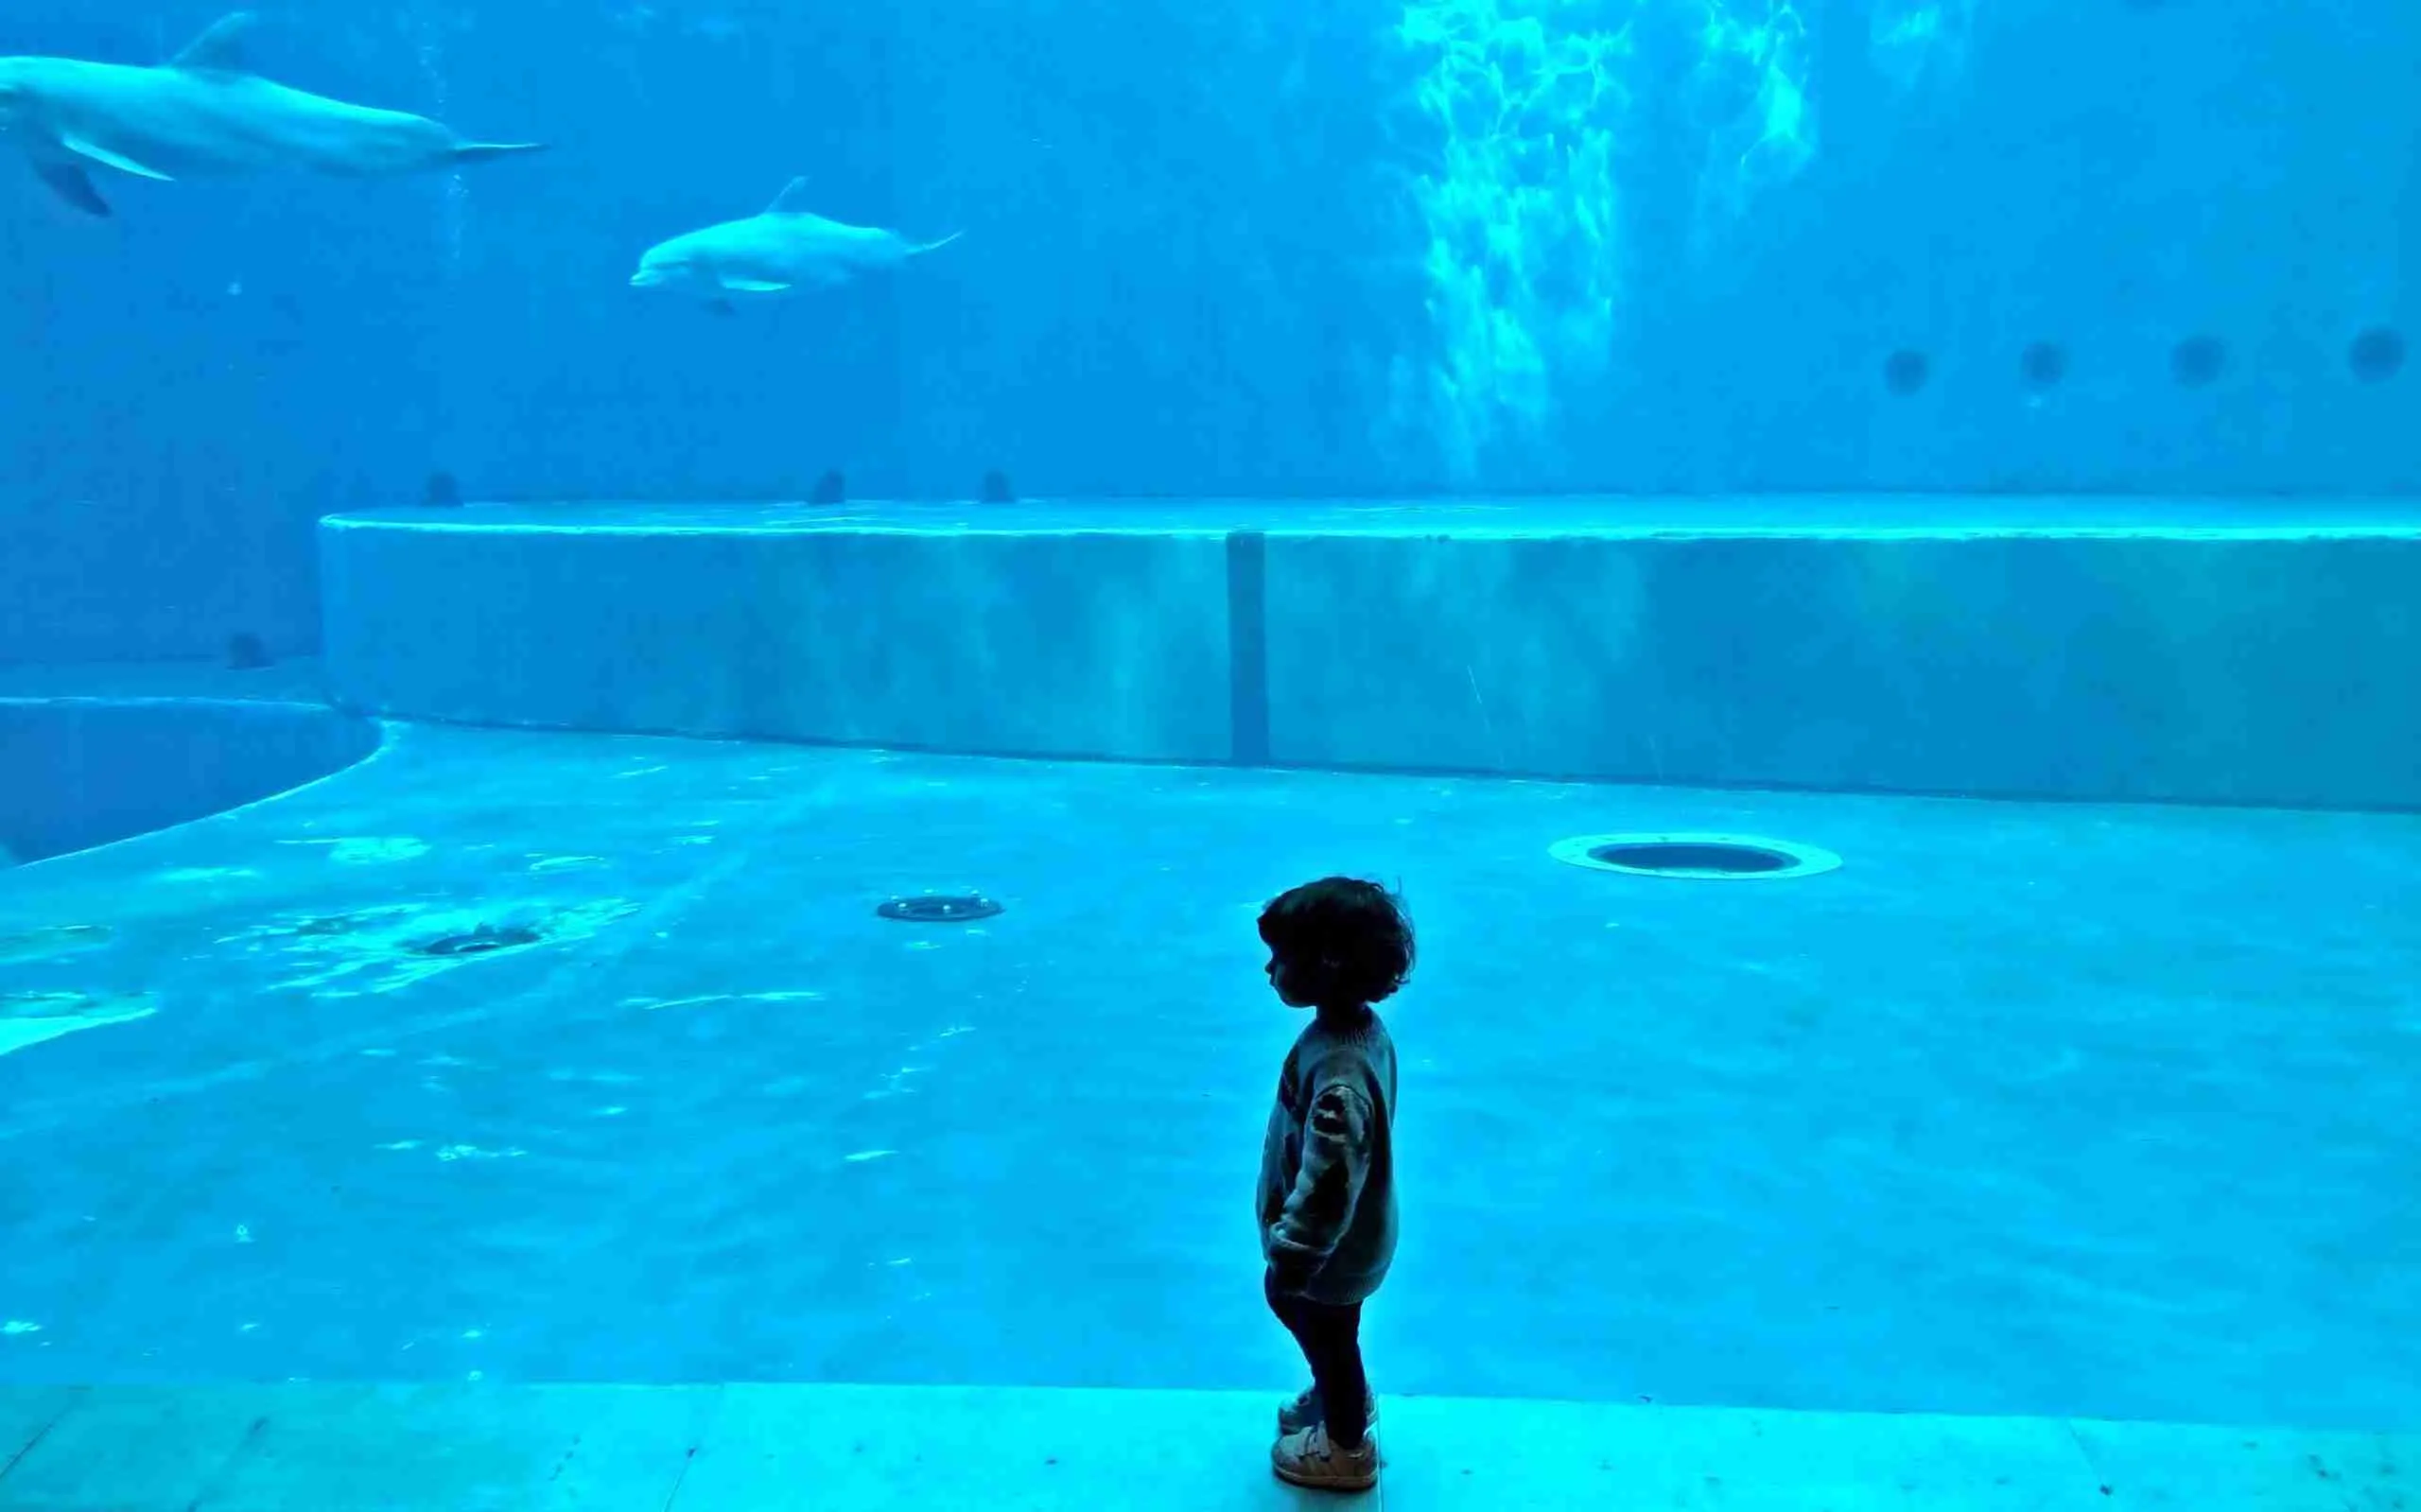 acquario di genova vasca con i delfini